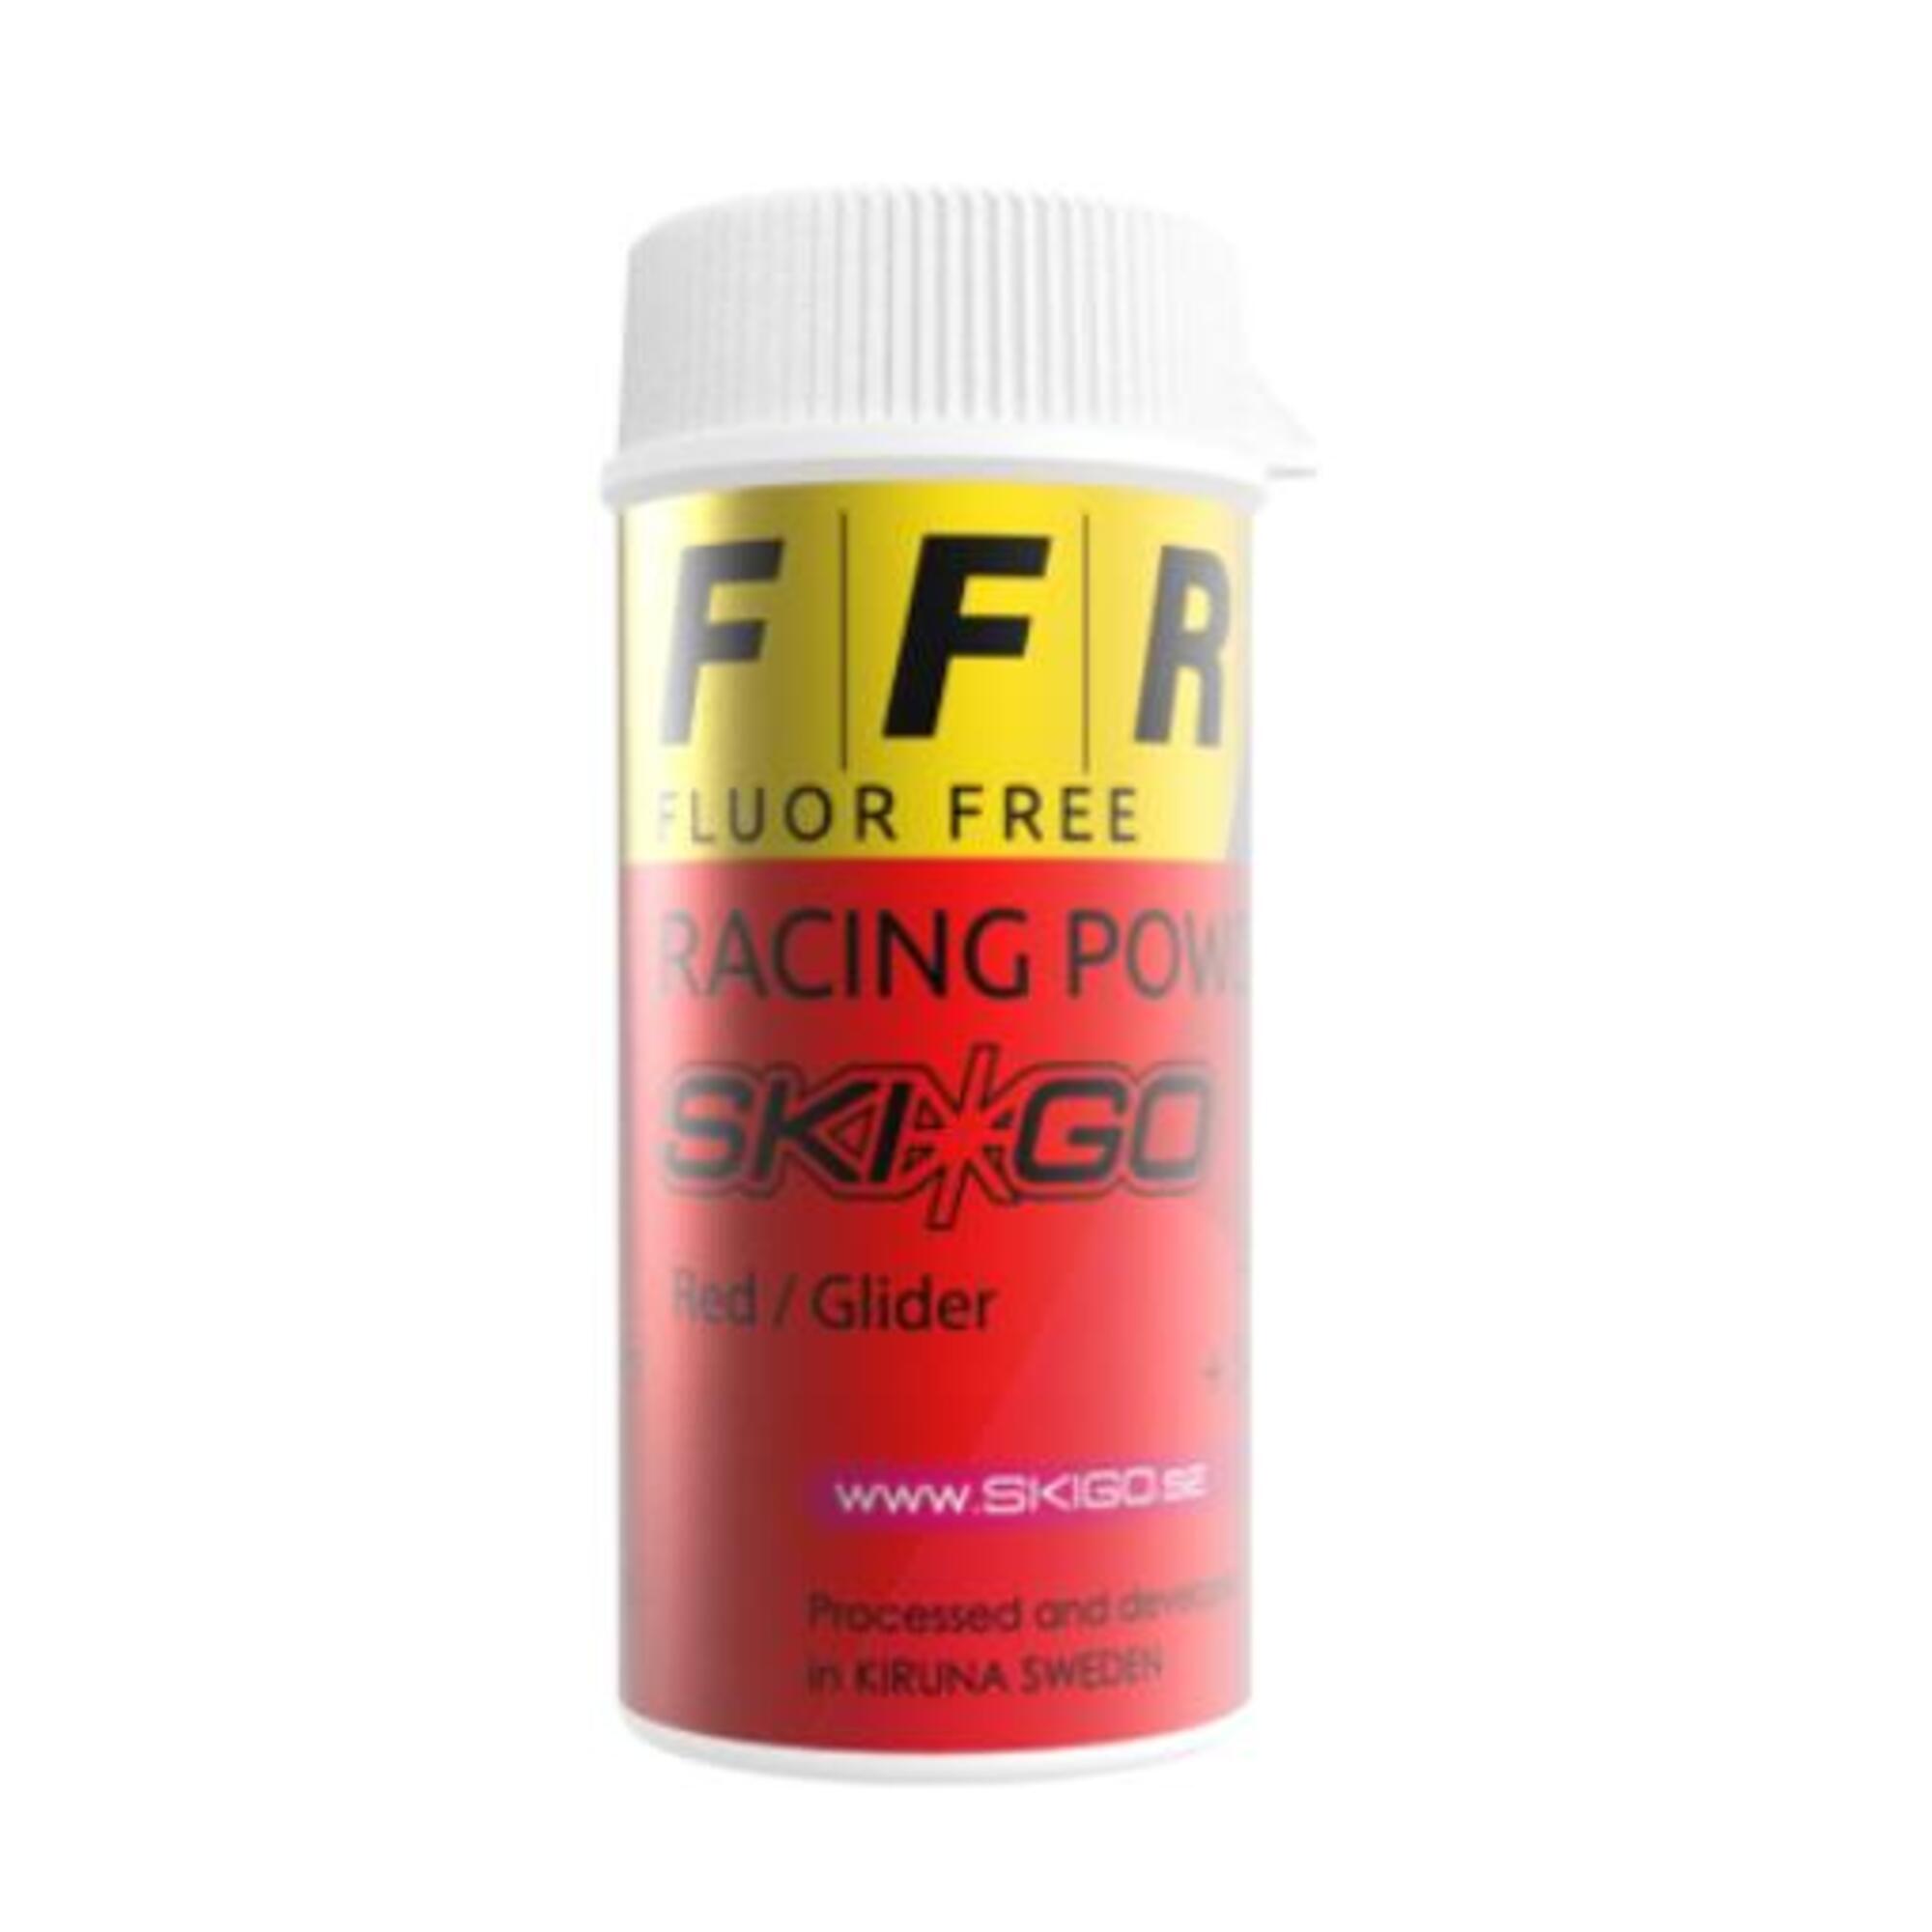  FFR Racing Powder 1/1